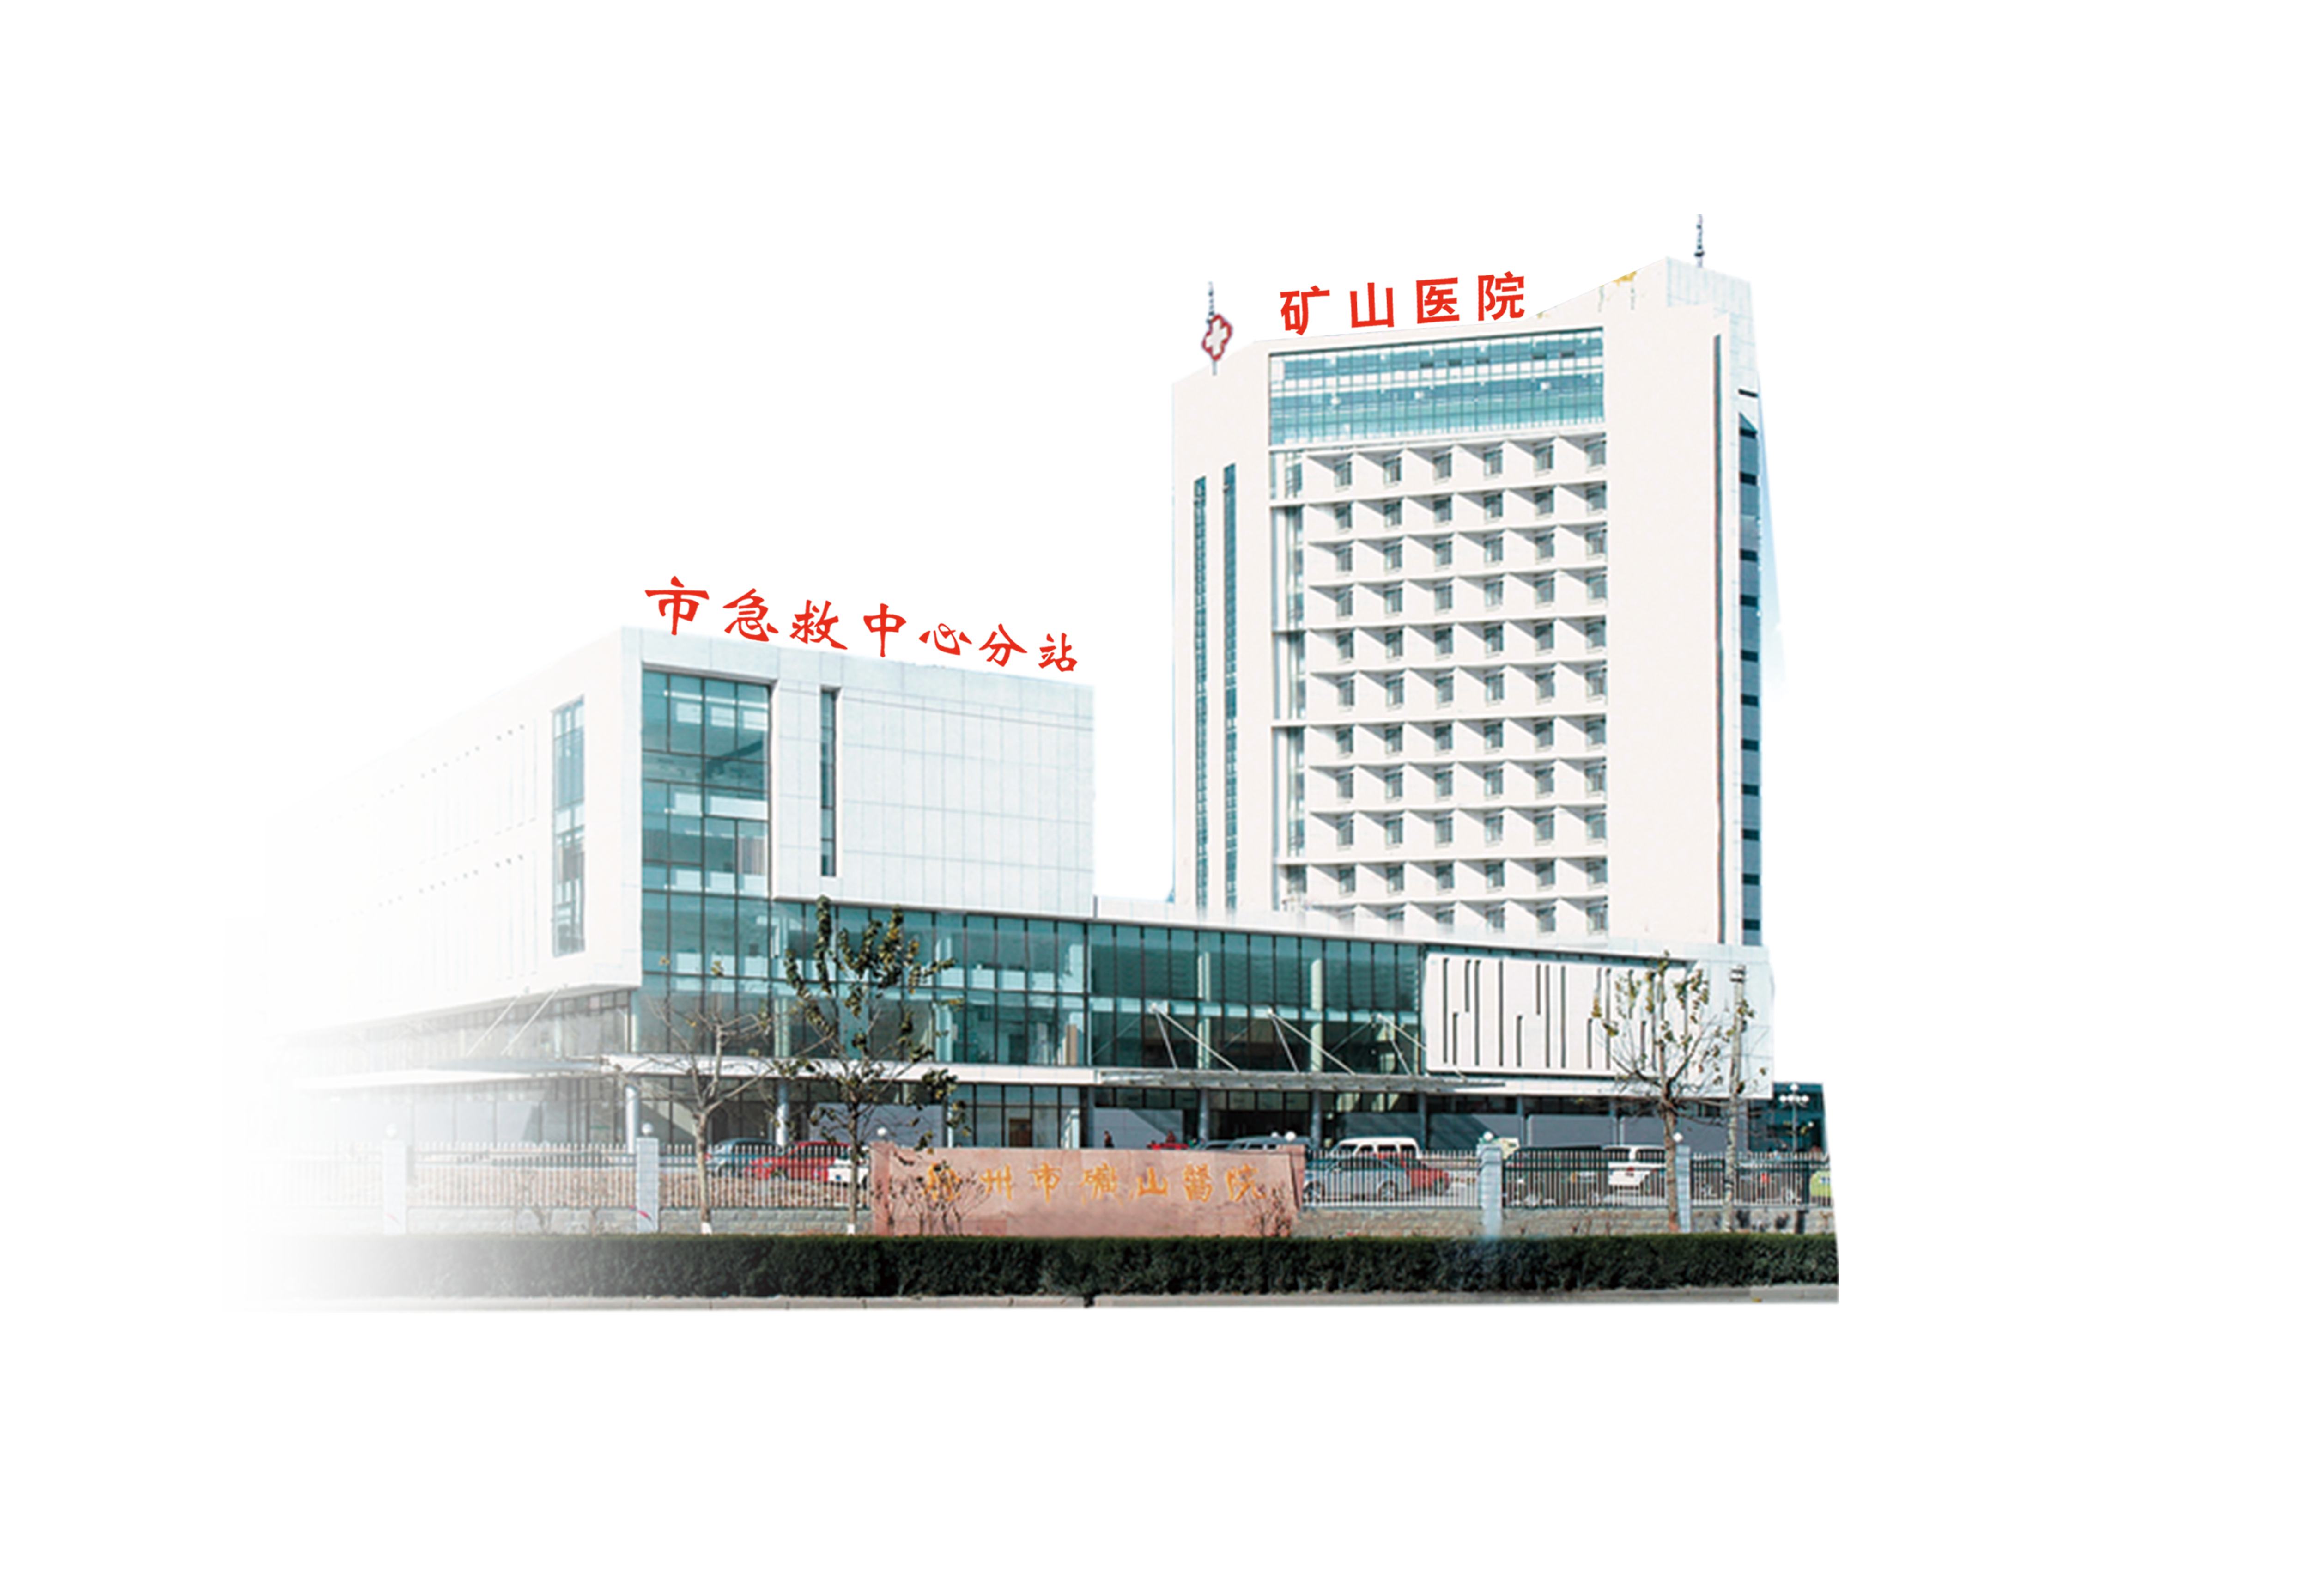 徐州市矿山医院